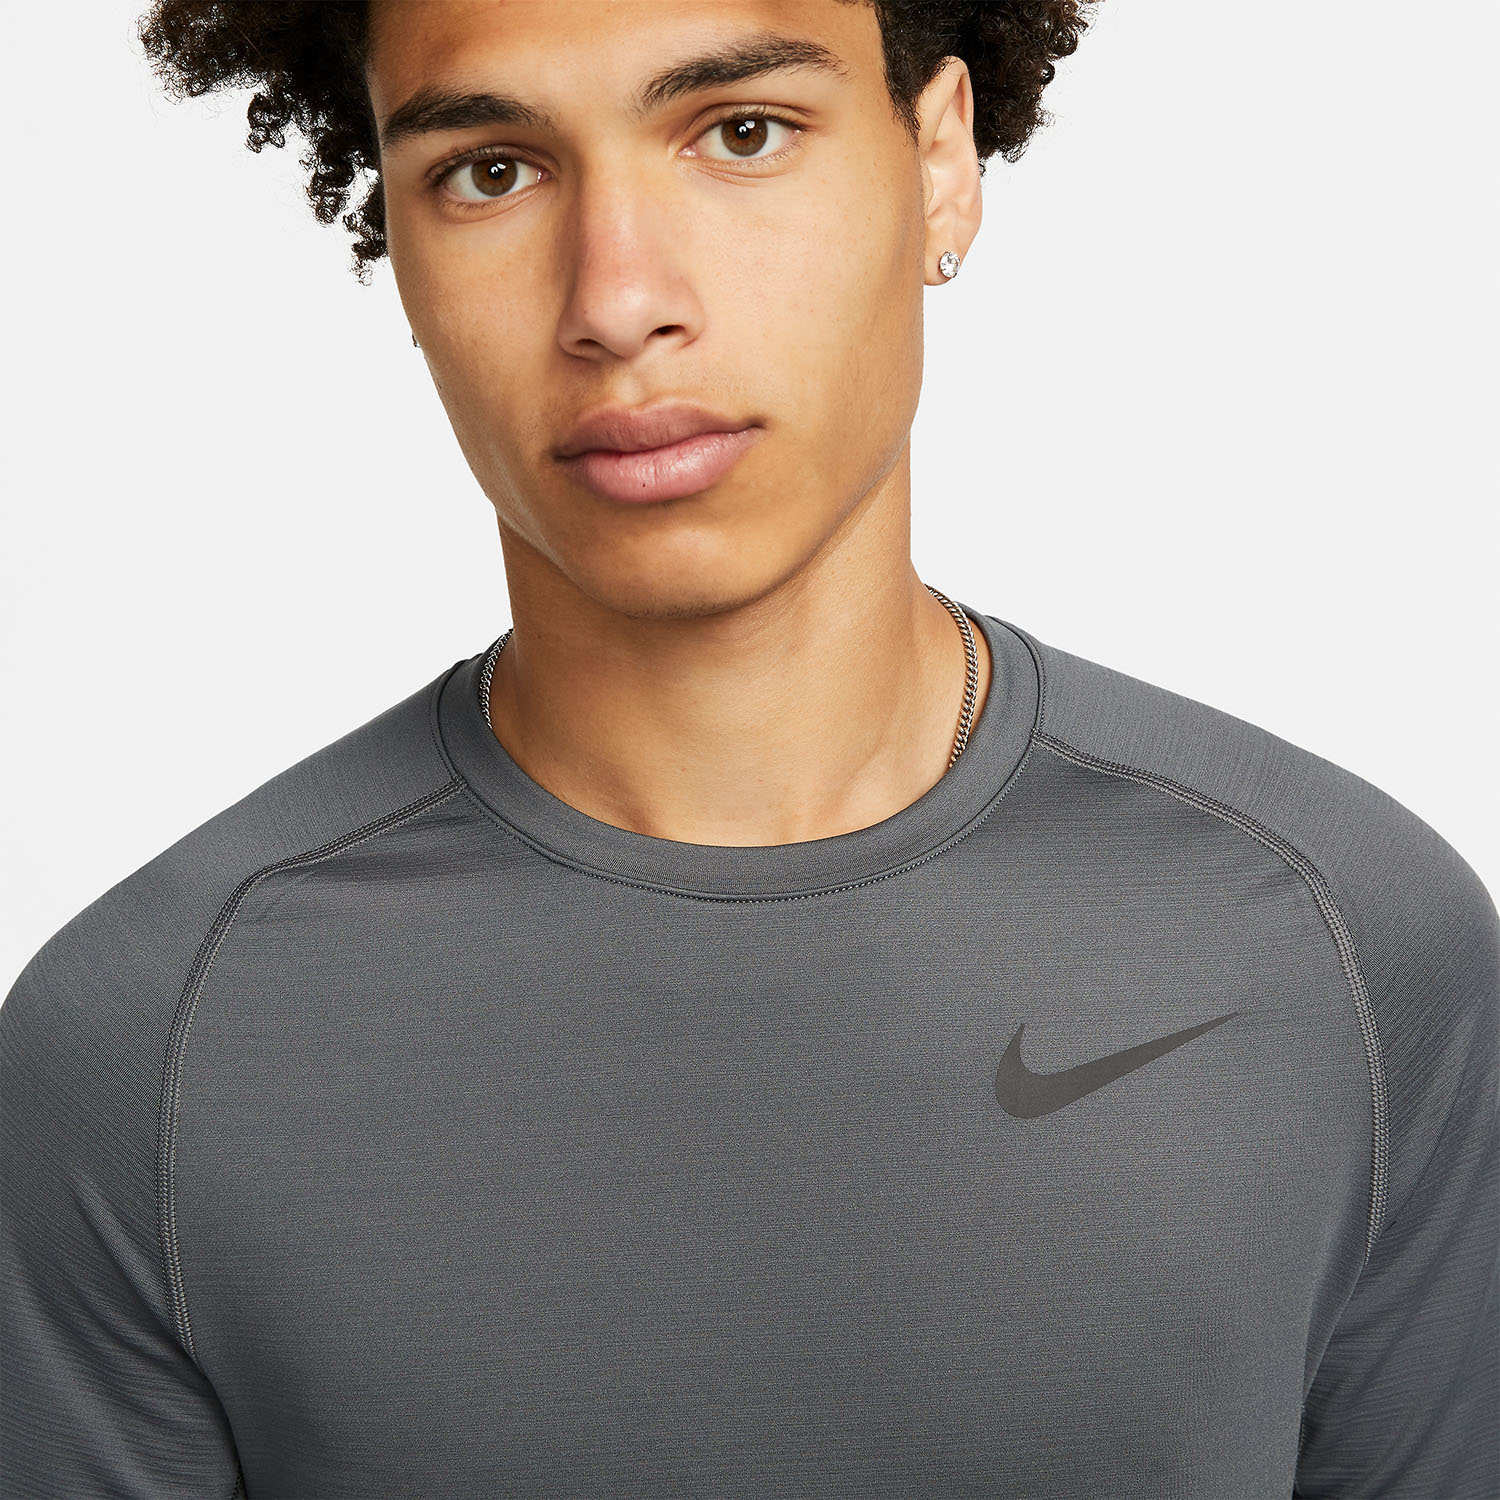 Nike Pro Swoosh Crew Men's Training Shirt - Iron Grey/Black